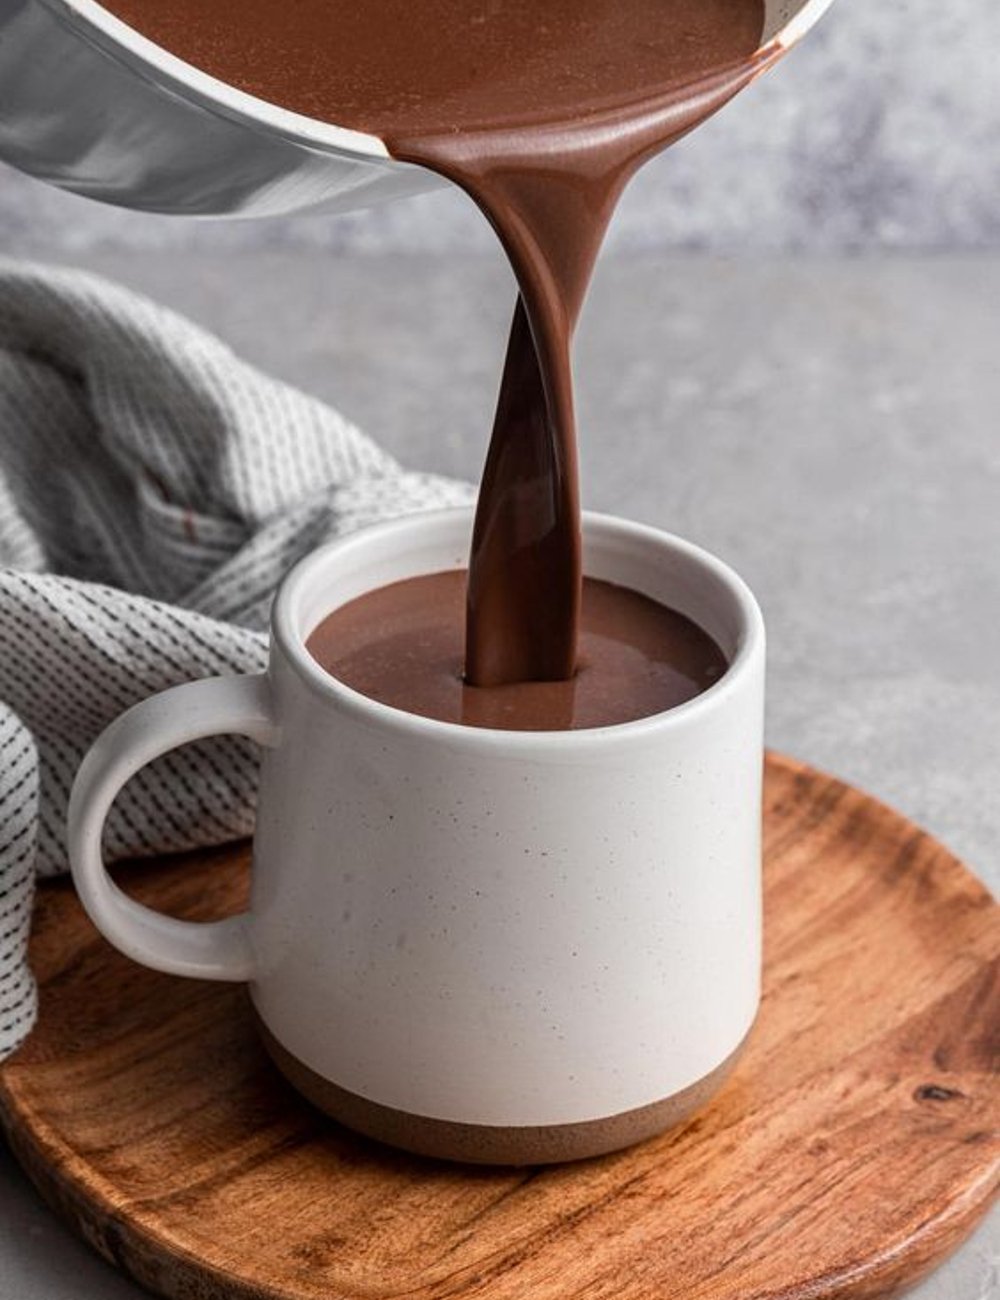 Chocolate quente - Chocolate quente - Chocolate quente - Chocolate quente - Chocolate quente - https://stealthelook.com.br